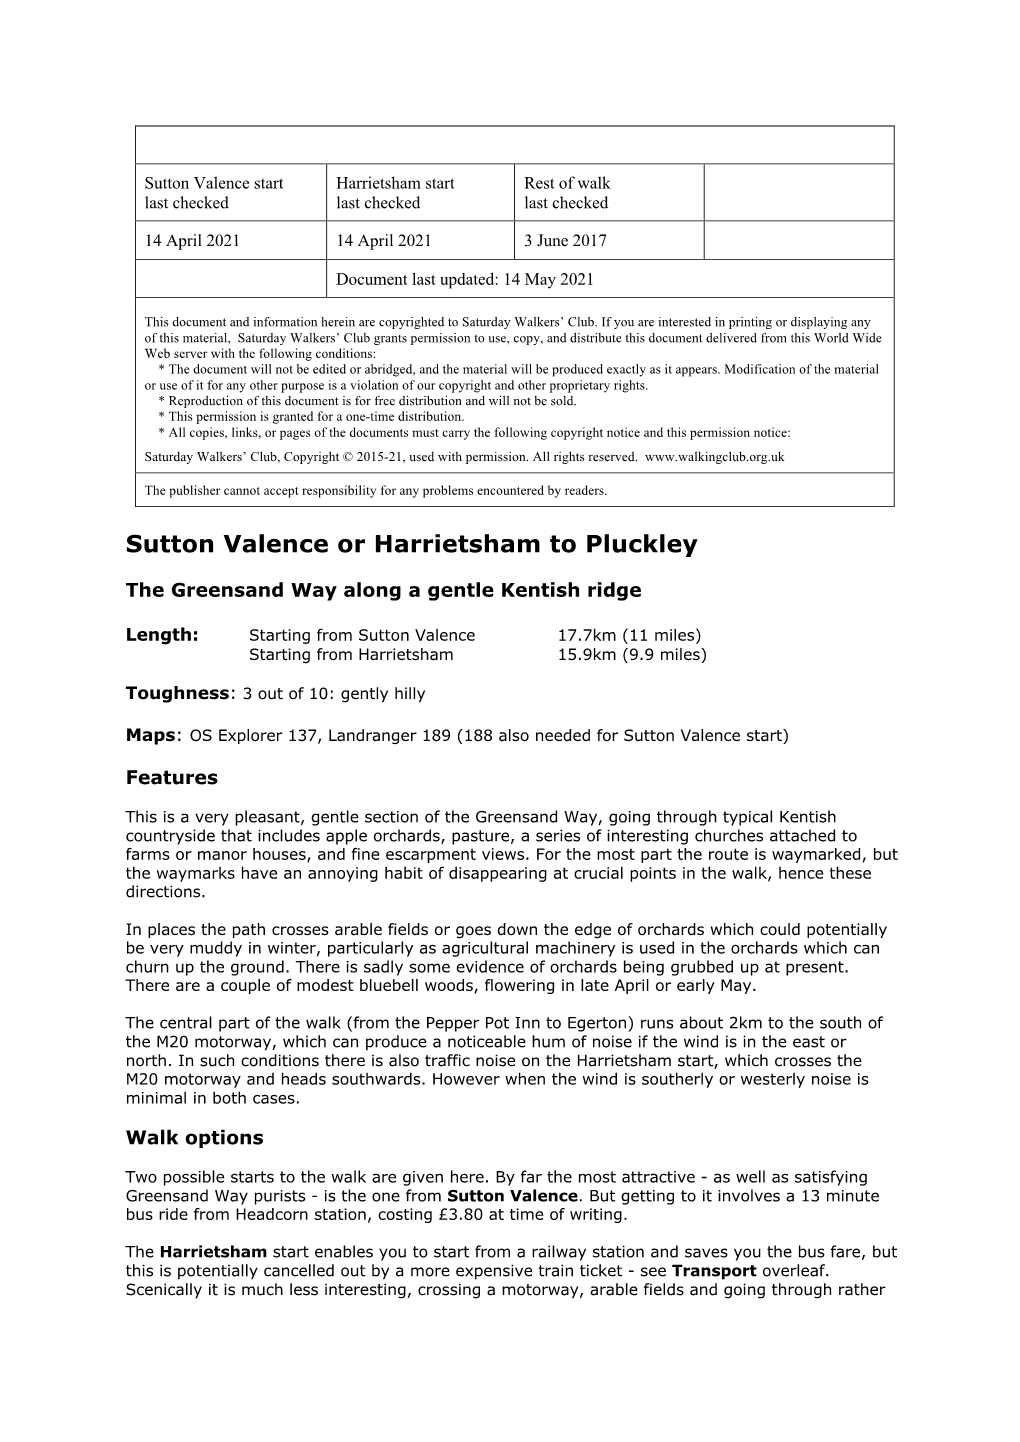 Sutton Valence Or Harrietsham to Pluckley